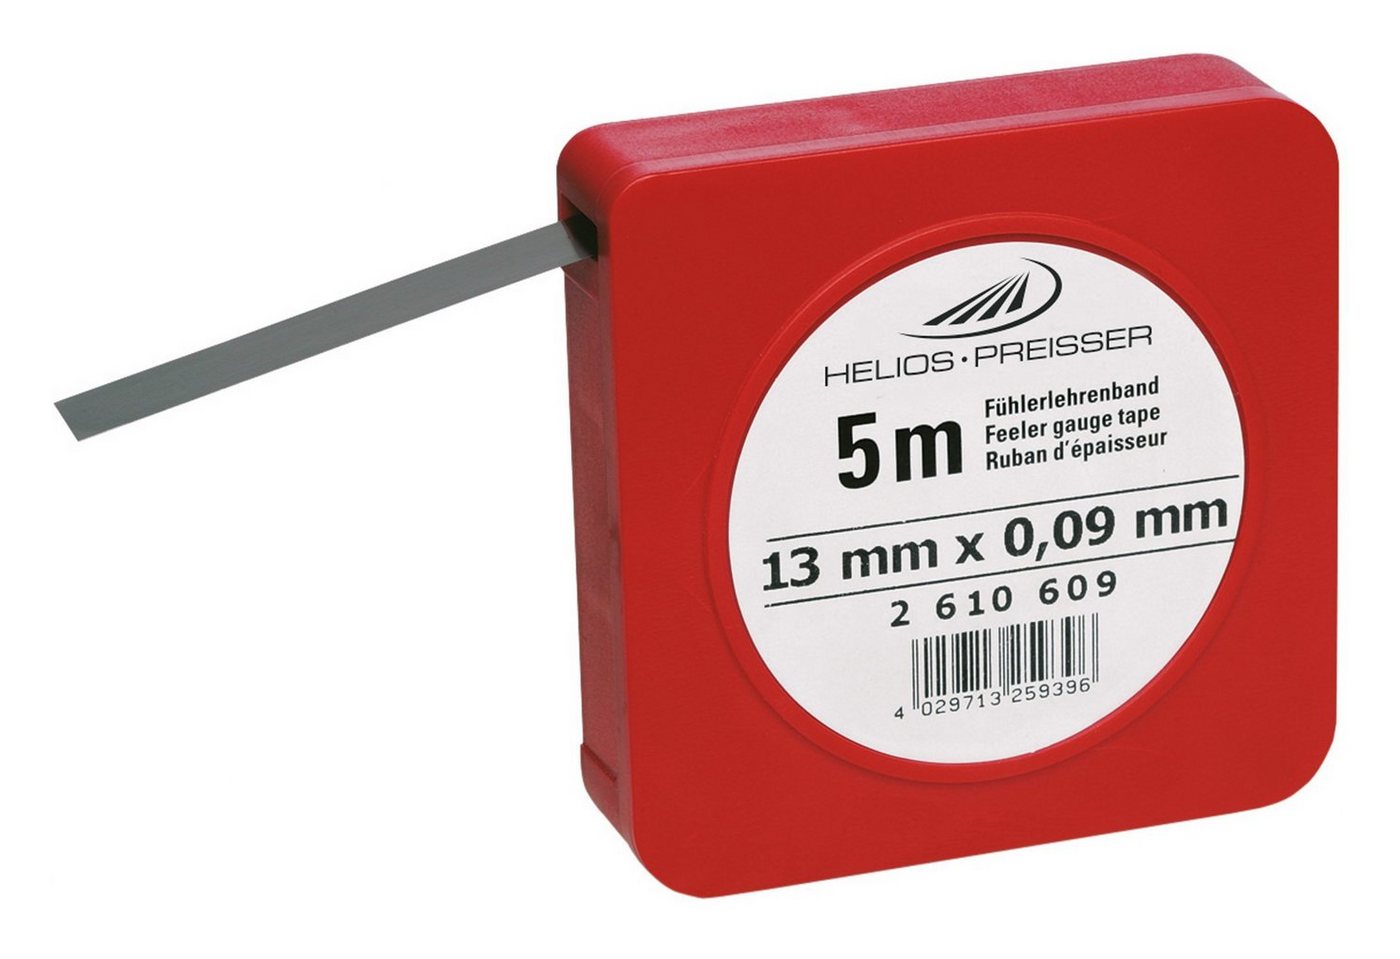 HELIOS PREISSER Fühlerlehre, Fühlerlehrenband 0,05 mm von HELIOS PREISSER